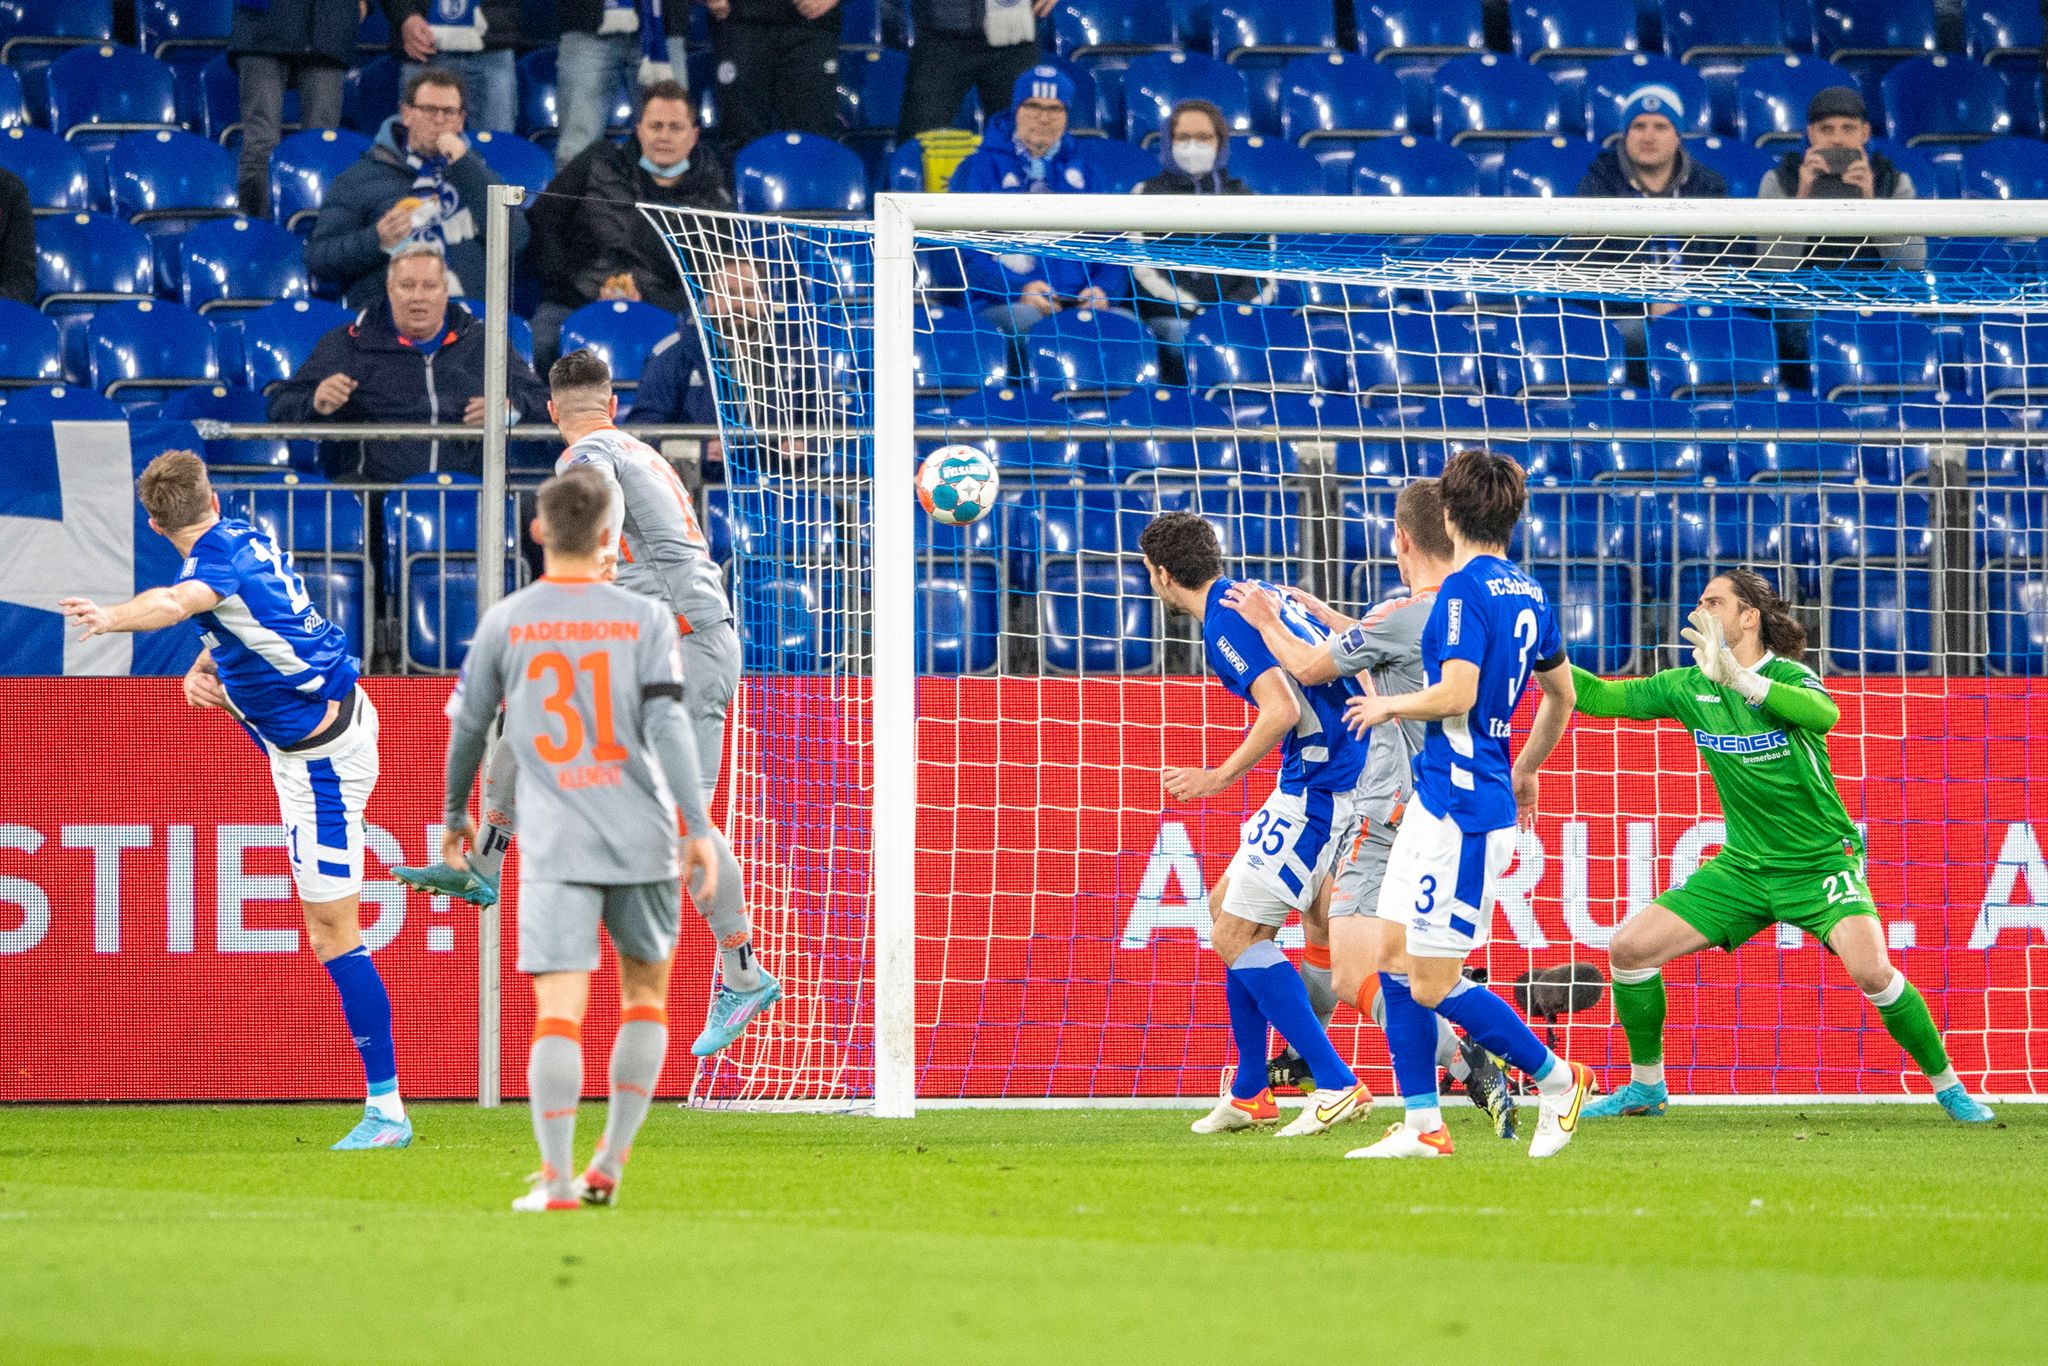 Der Schalker Marius Bülter erzielte das 1:0.